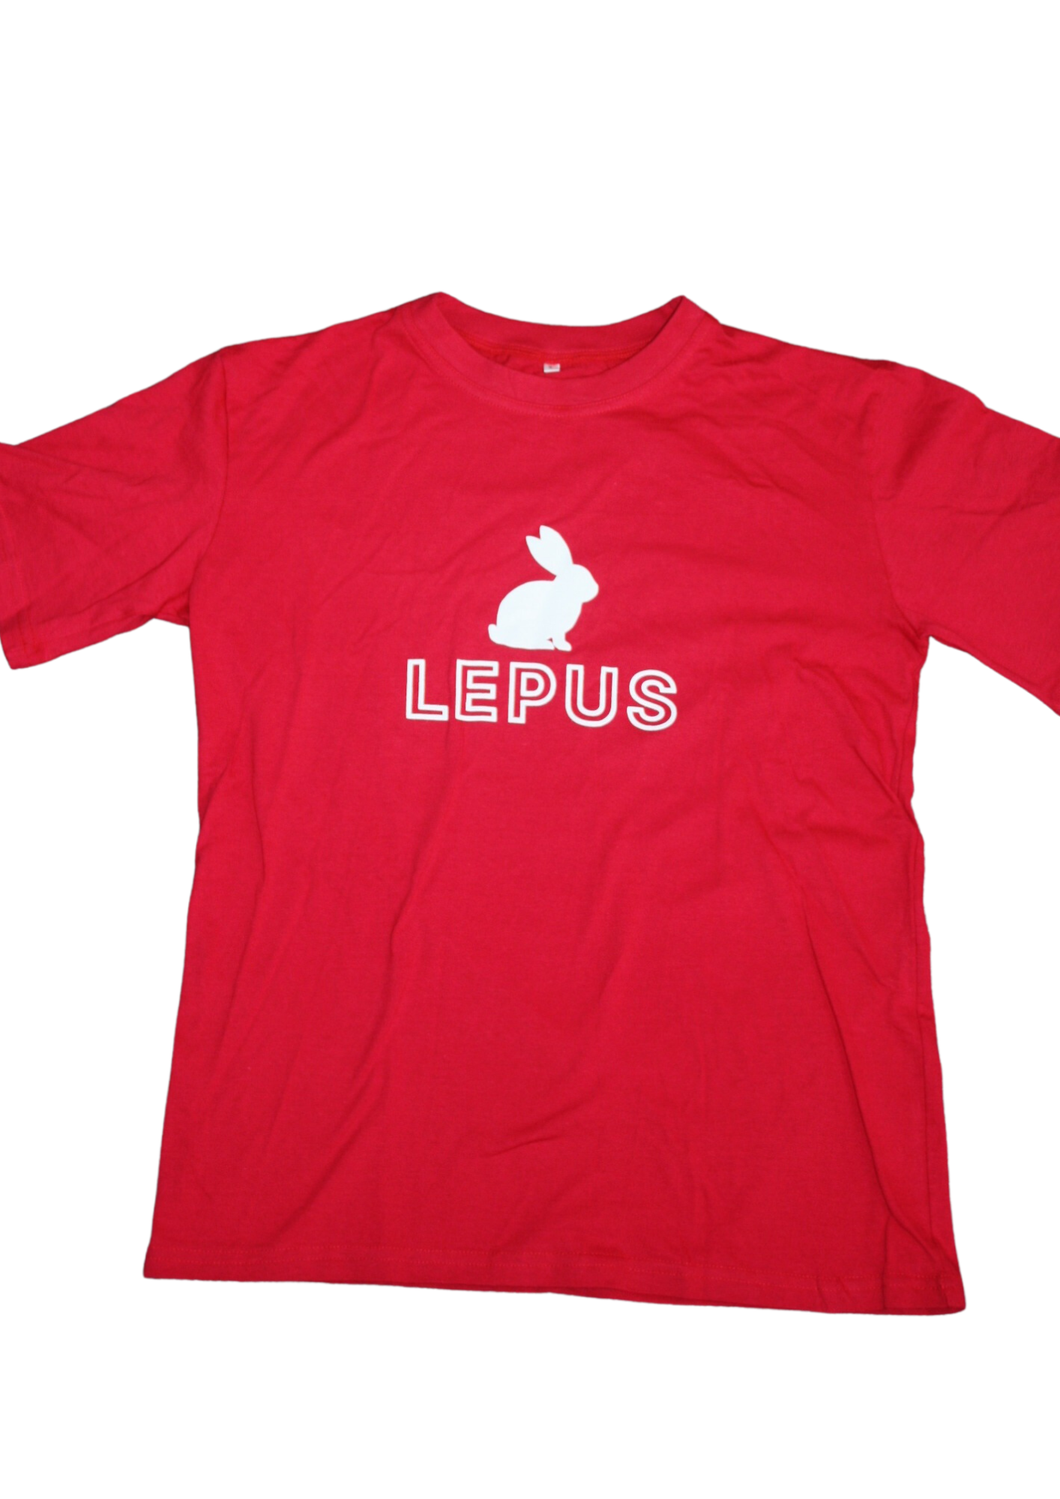 House Tshirt Red Lepus